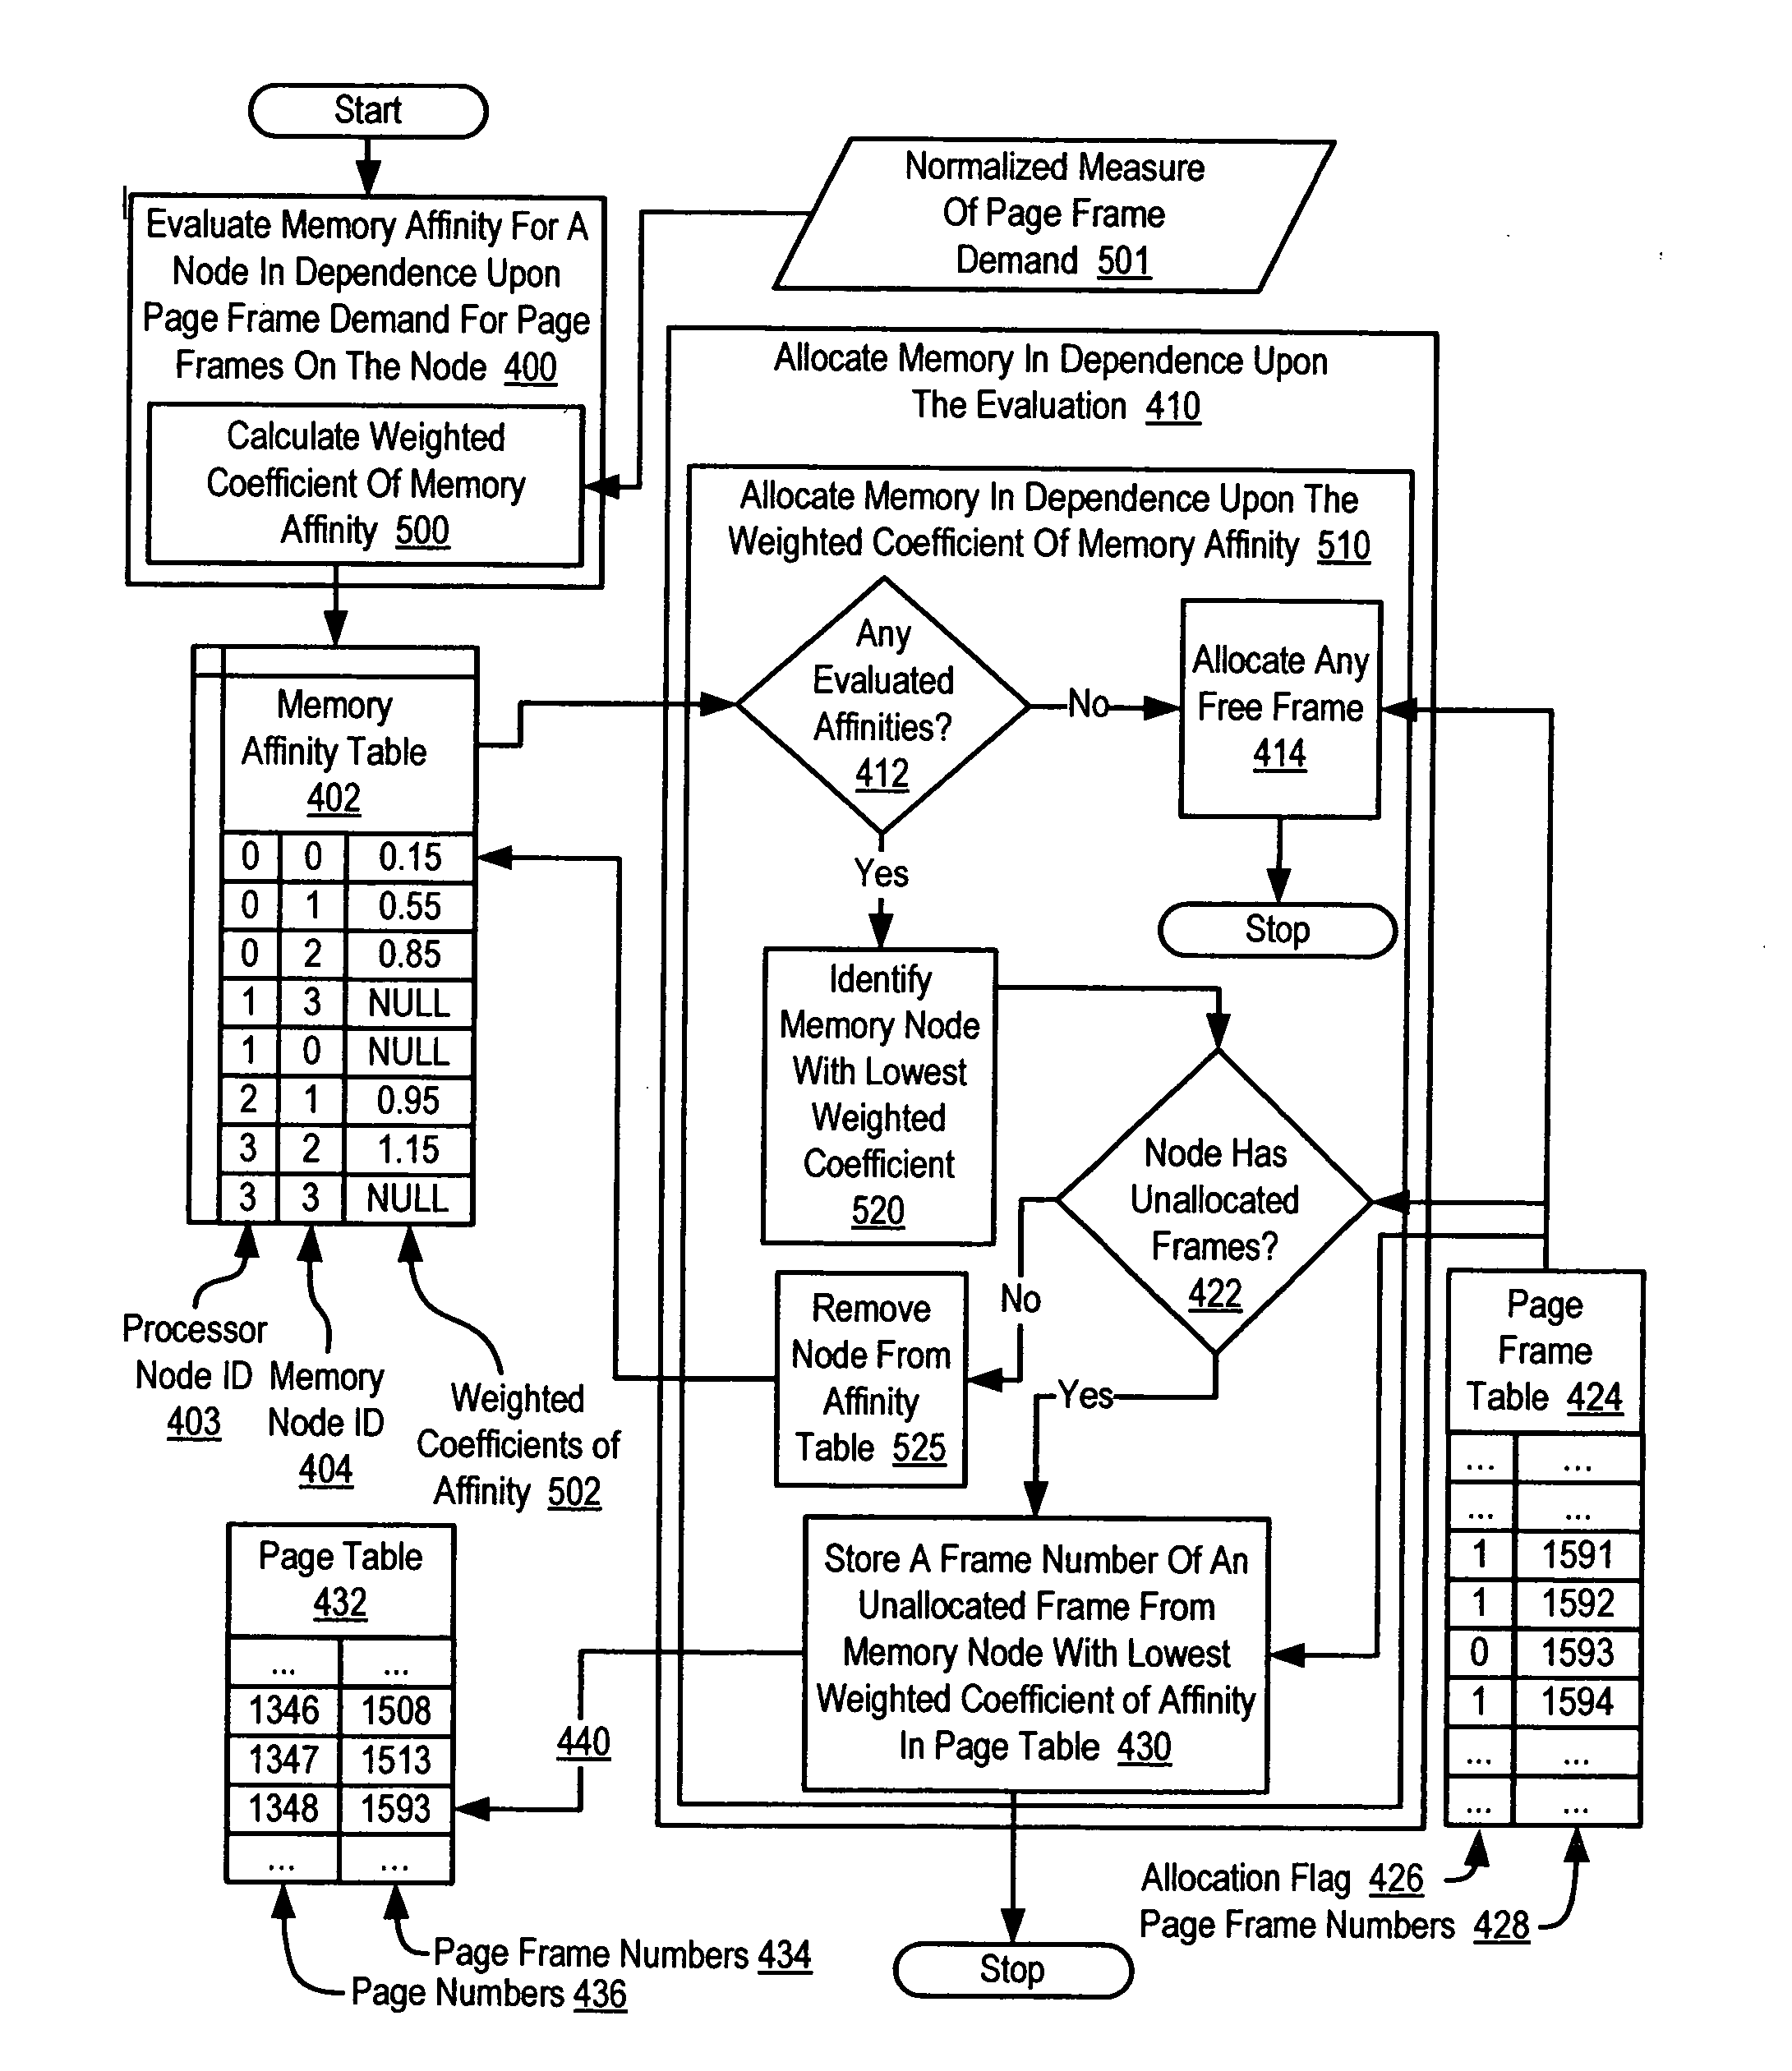 Memory allocation in a multi-node computer